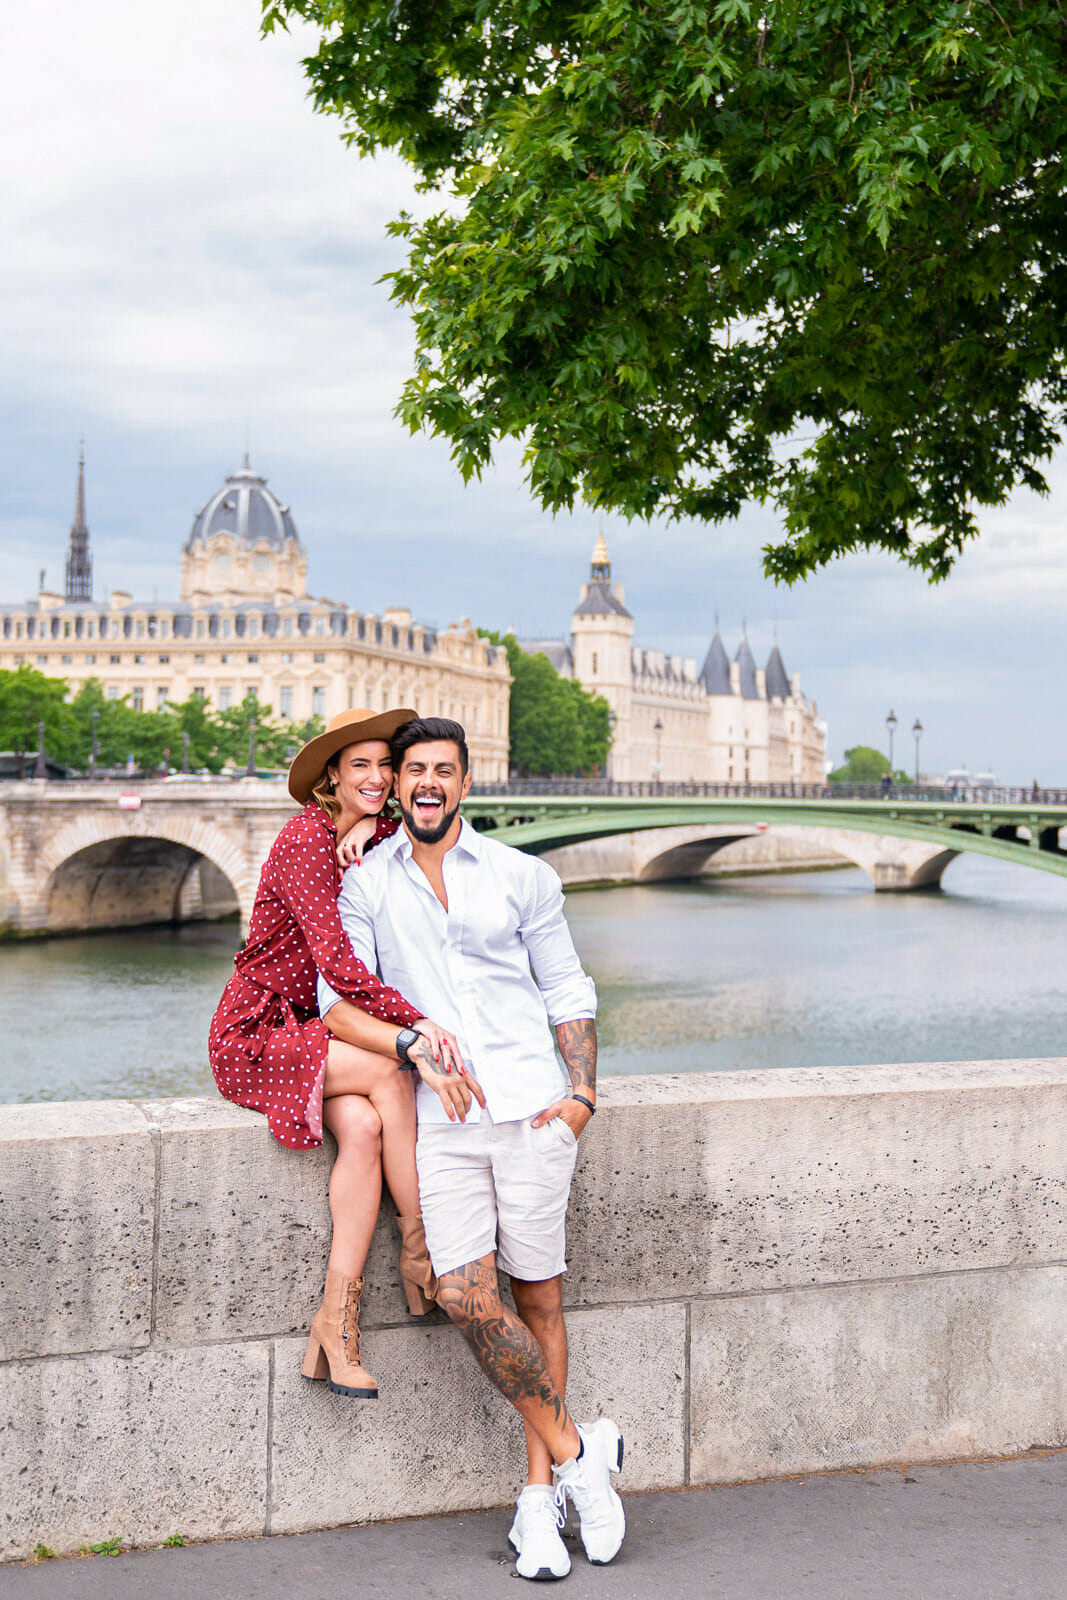 Unusual Paris couple photoshoot near Notre Dame